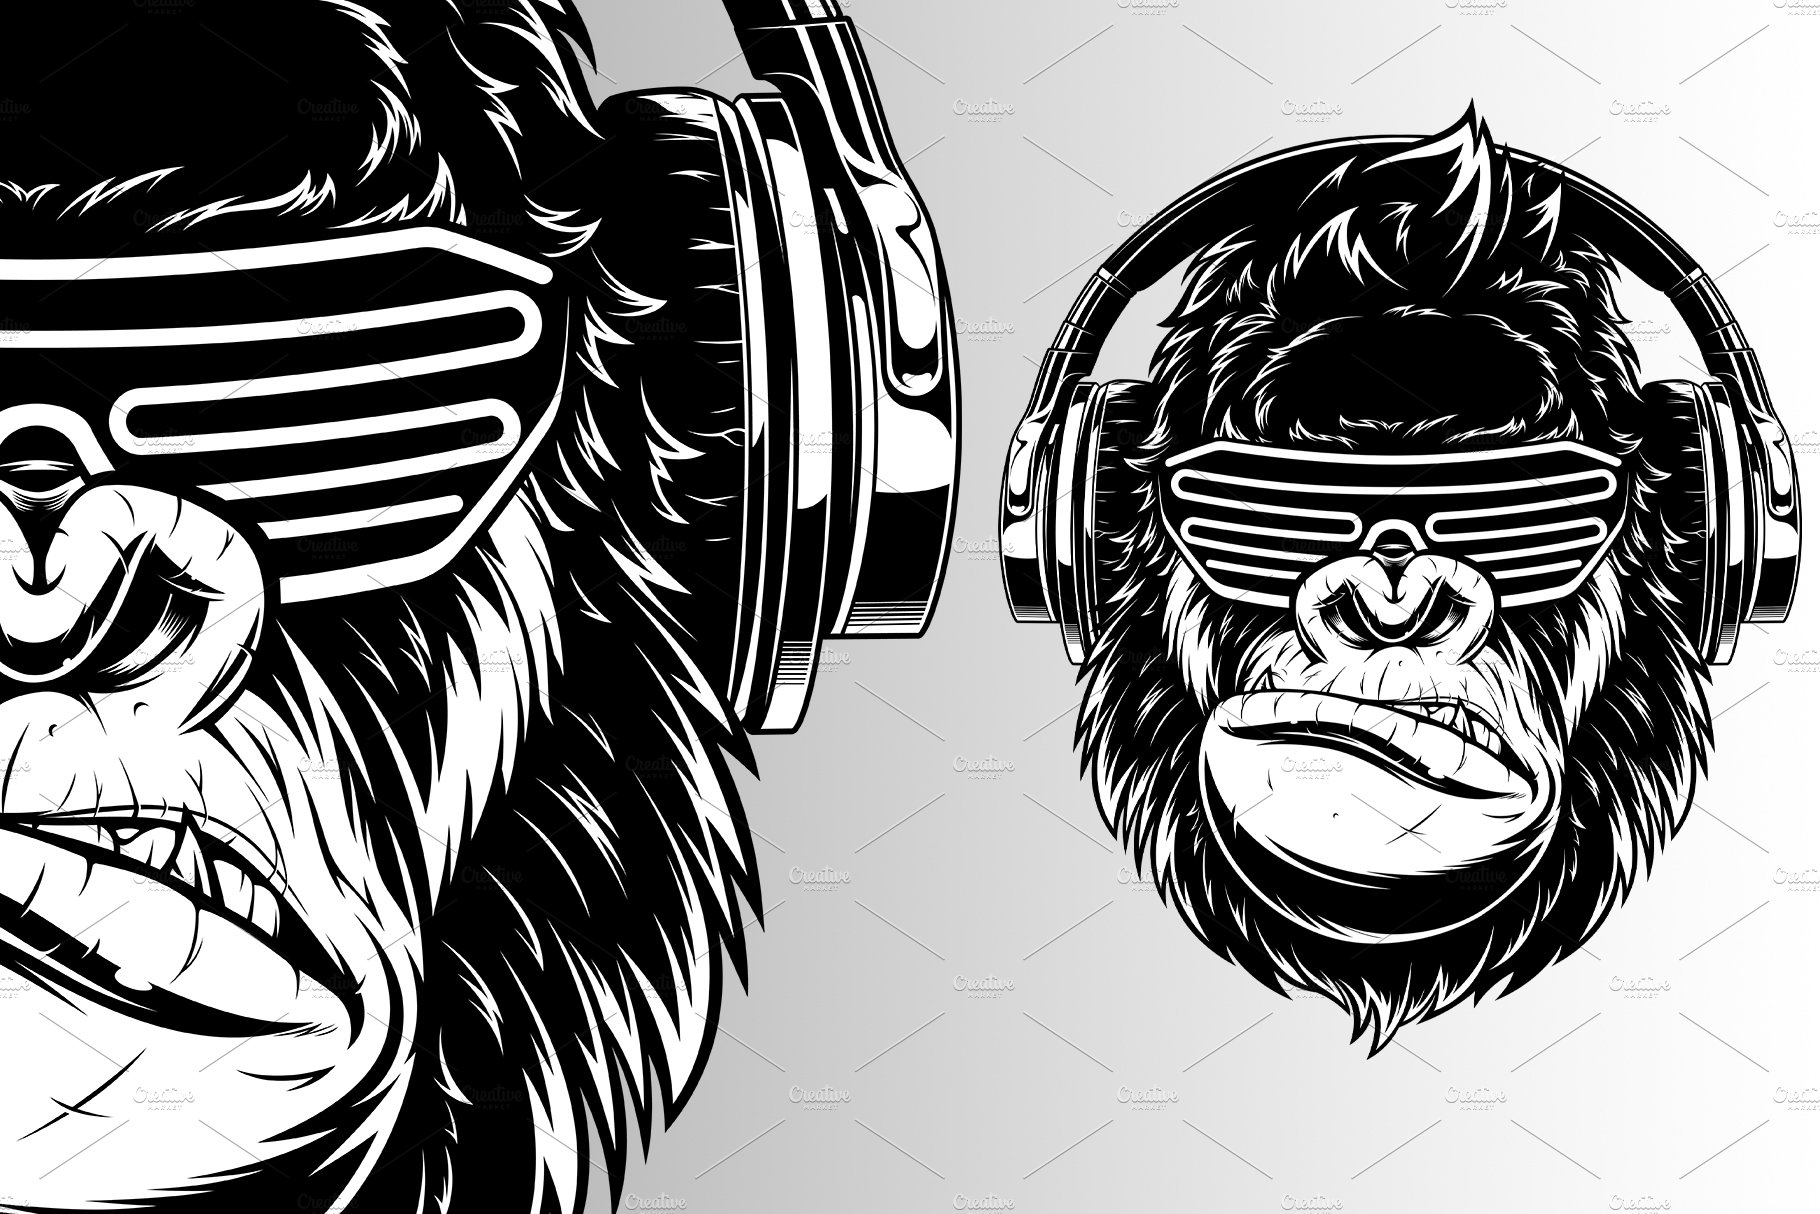 Ferocious gorilla in headphones cover image.